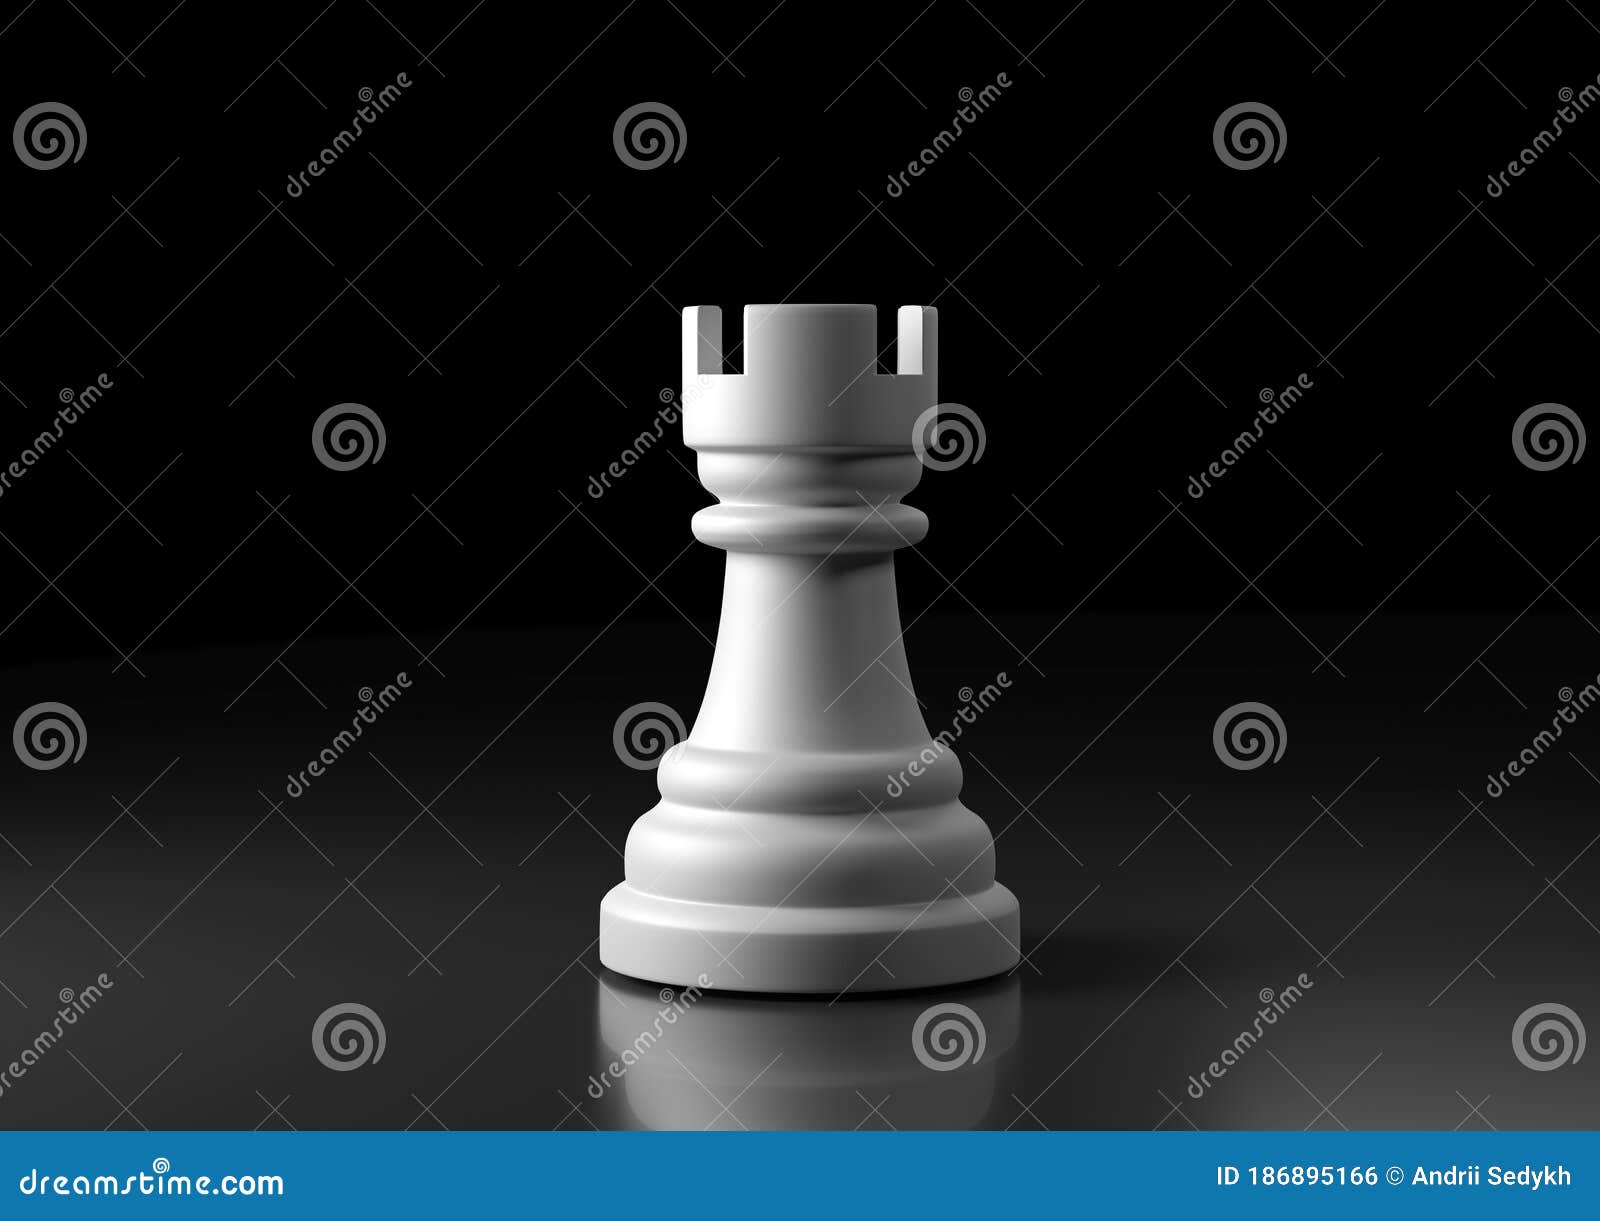 Conceito de jogo de xadrez com tabuleiro realista e peças preto e brancas